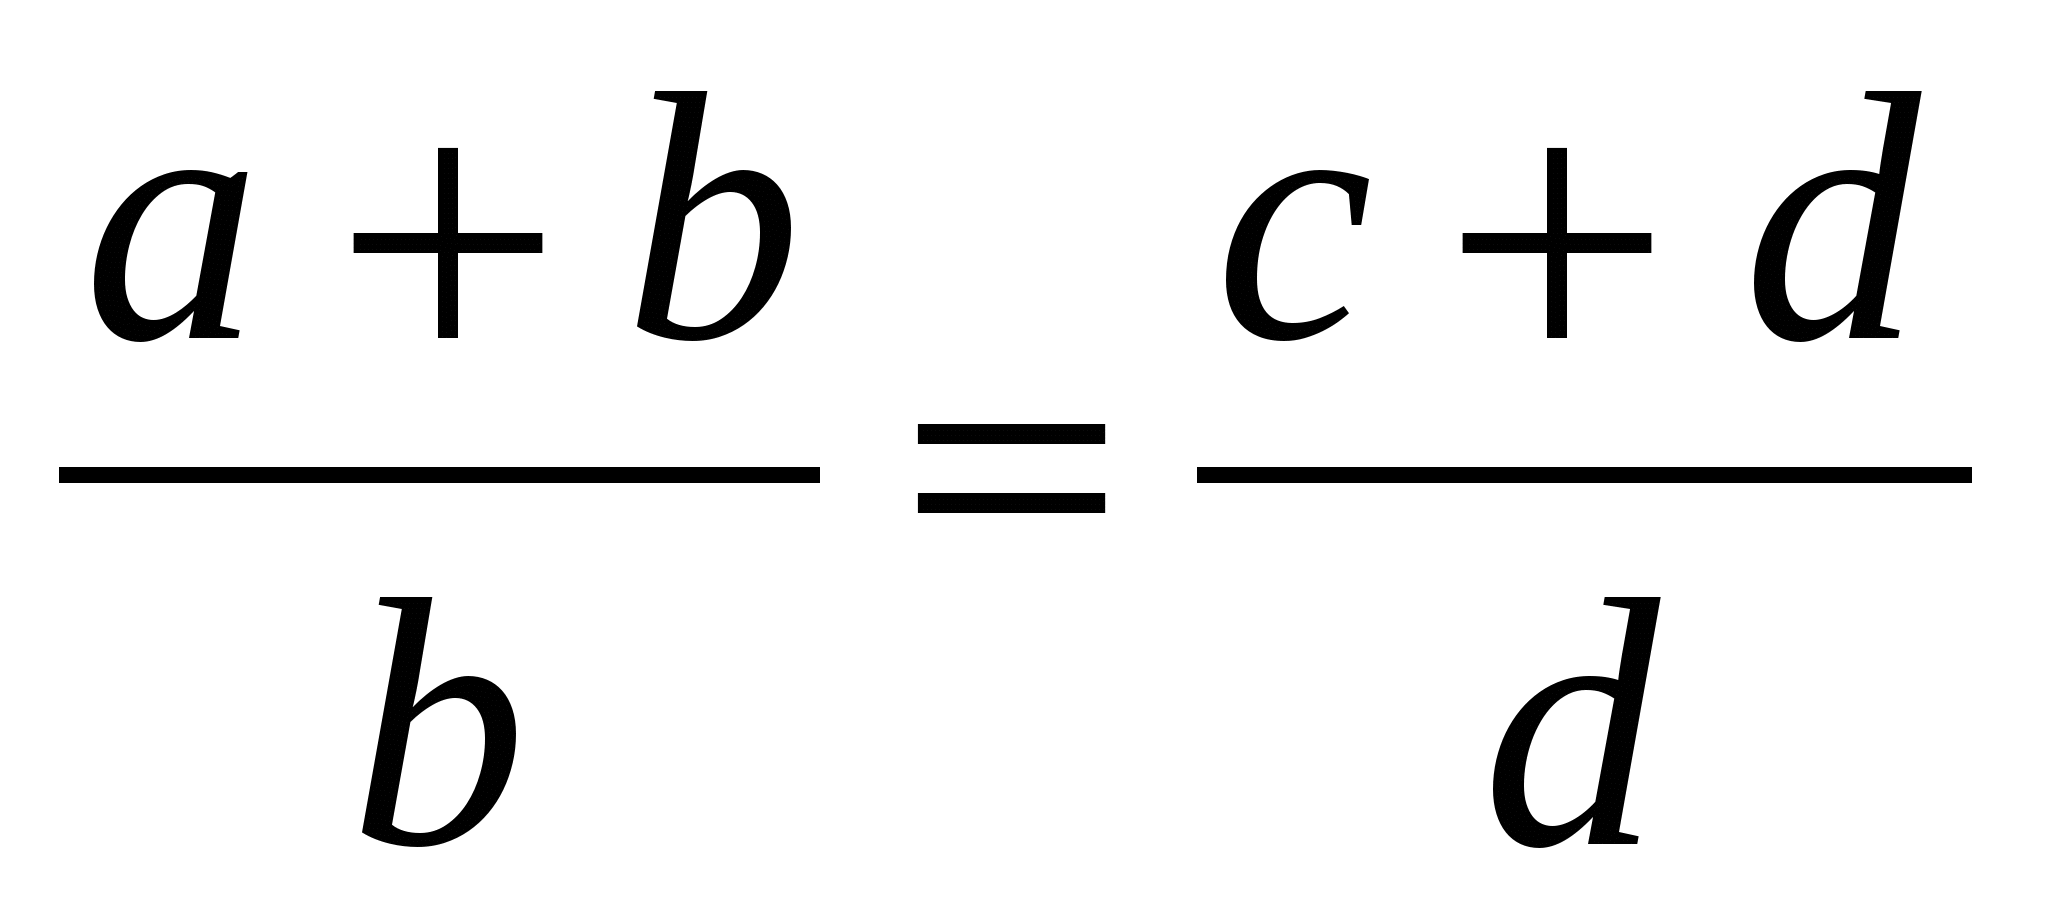 УМК Решение прикладных задач по математике (10-11 классы)